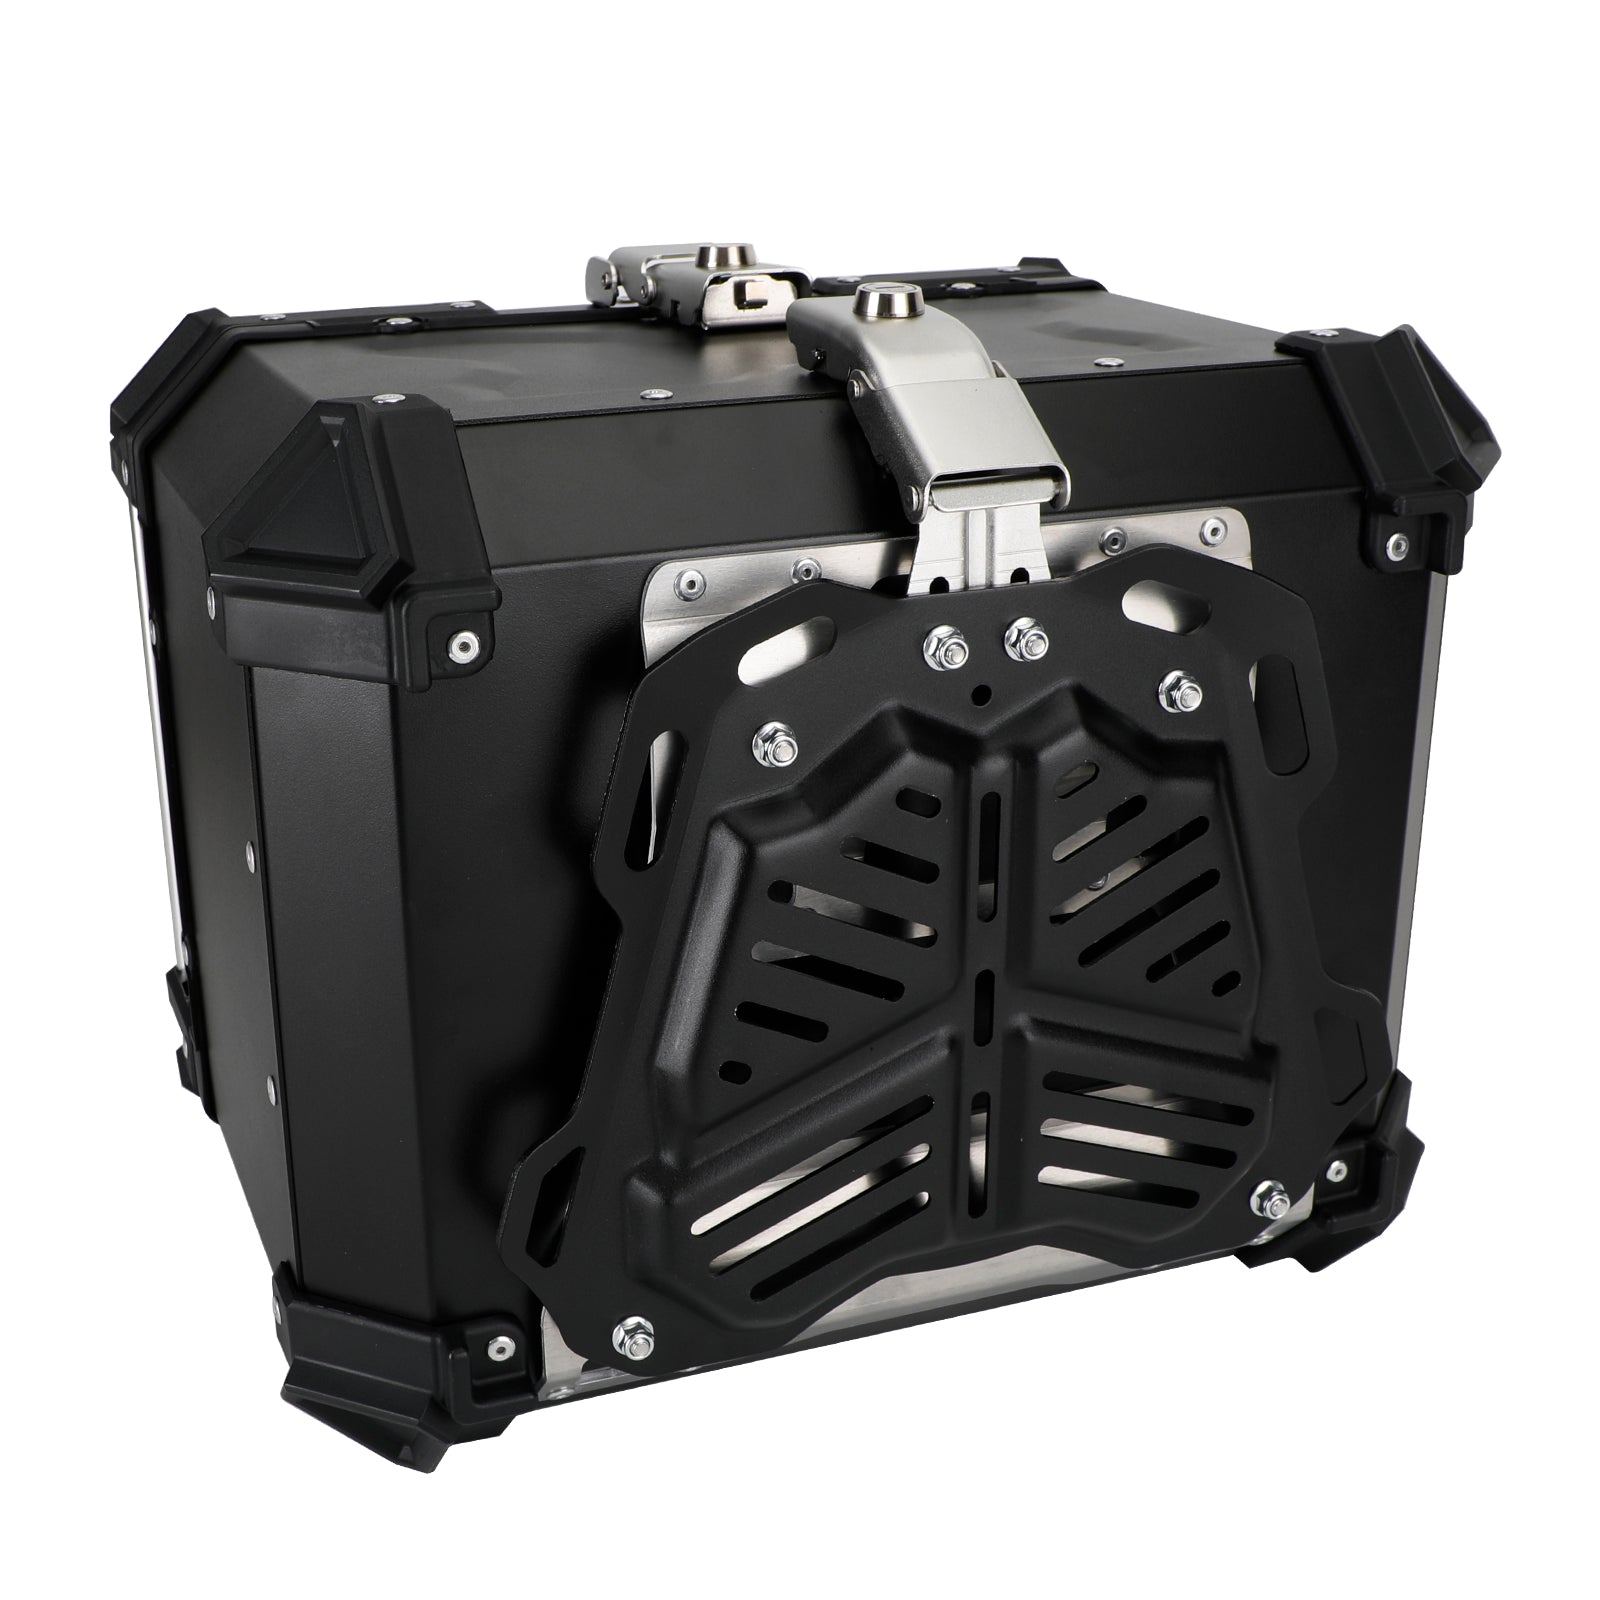 Pack Baule Baule posteriore Box portabagagli superiore universale per Bmw R1200GS R1250GS F750GS 65L